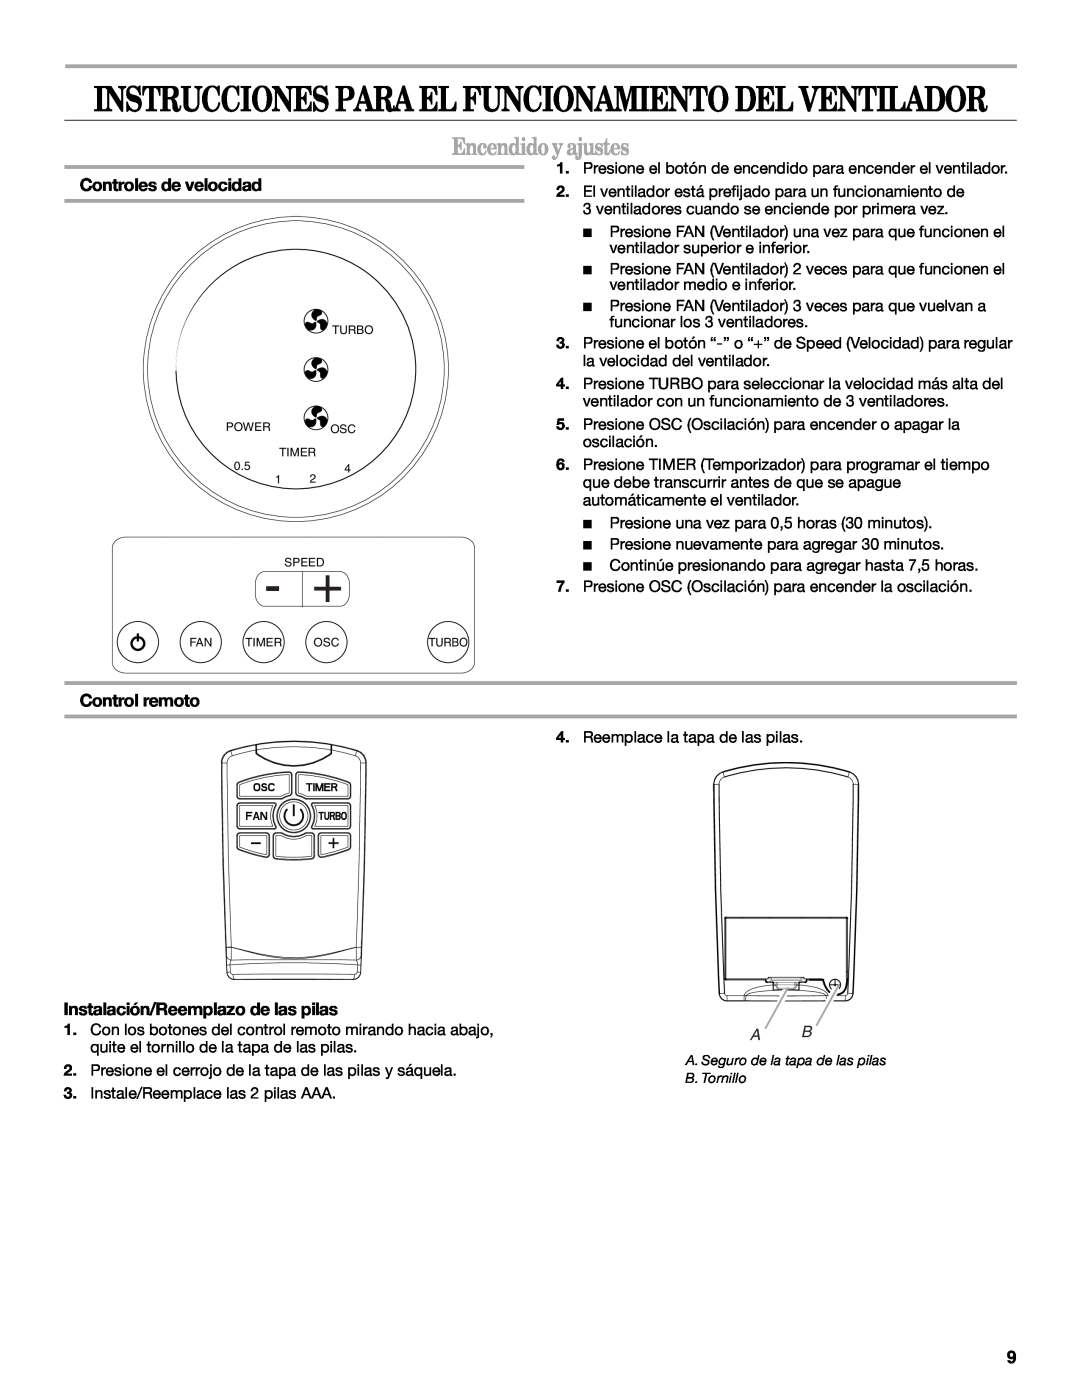 Whirlpool WF4235ER1 manual Encendido y ajustes, Controles de velocidad, Control remoto, Instalación/Reemplazo de las pilas 